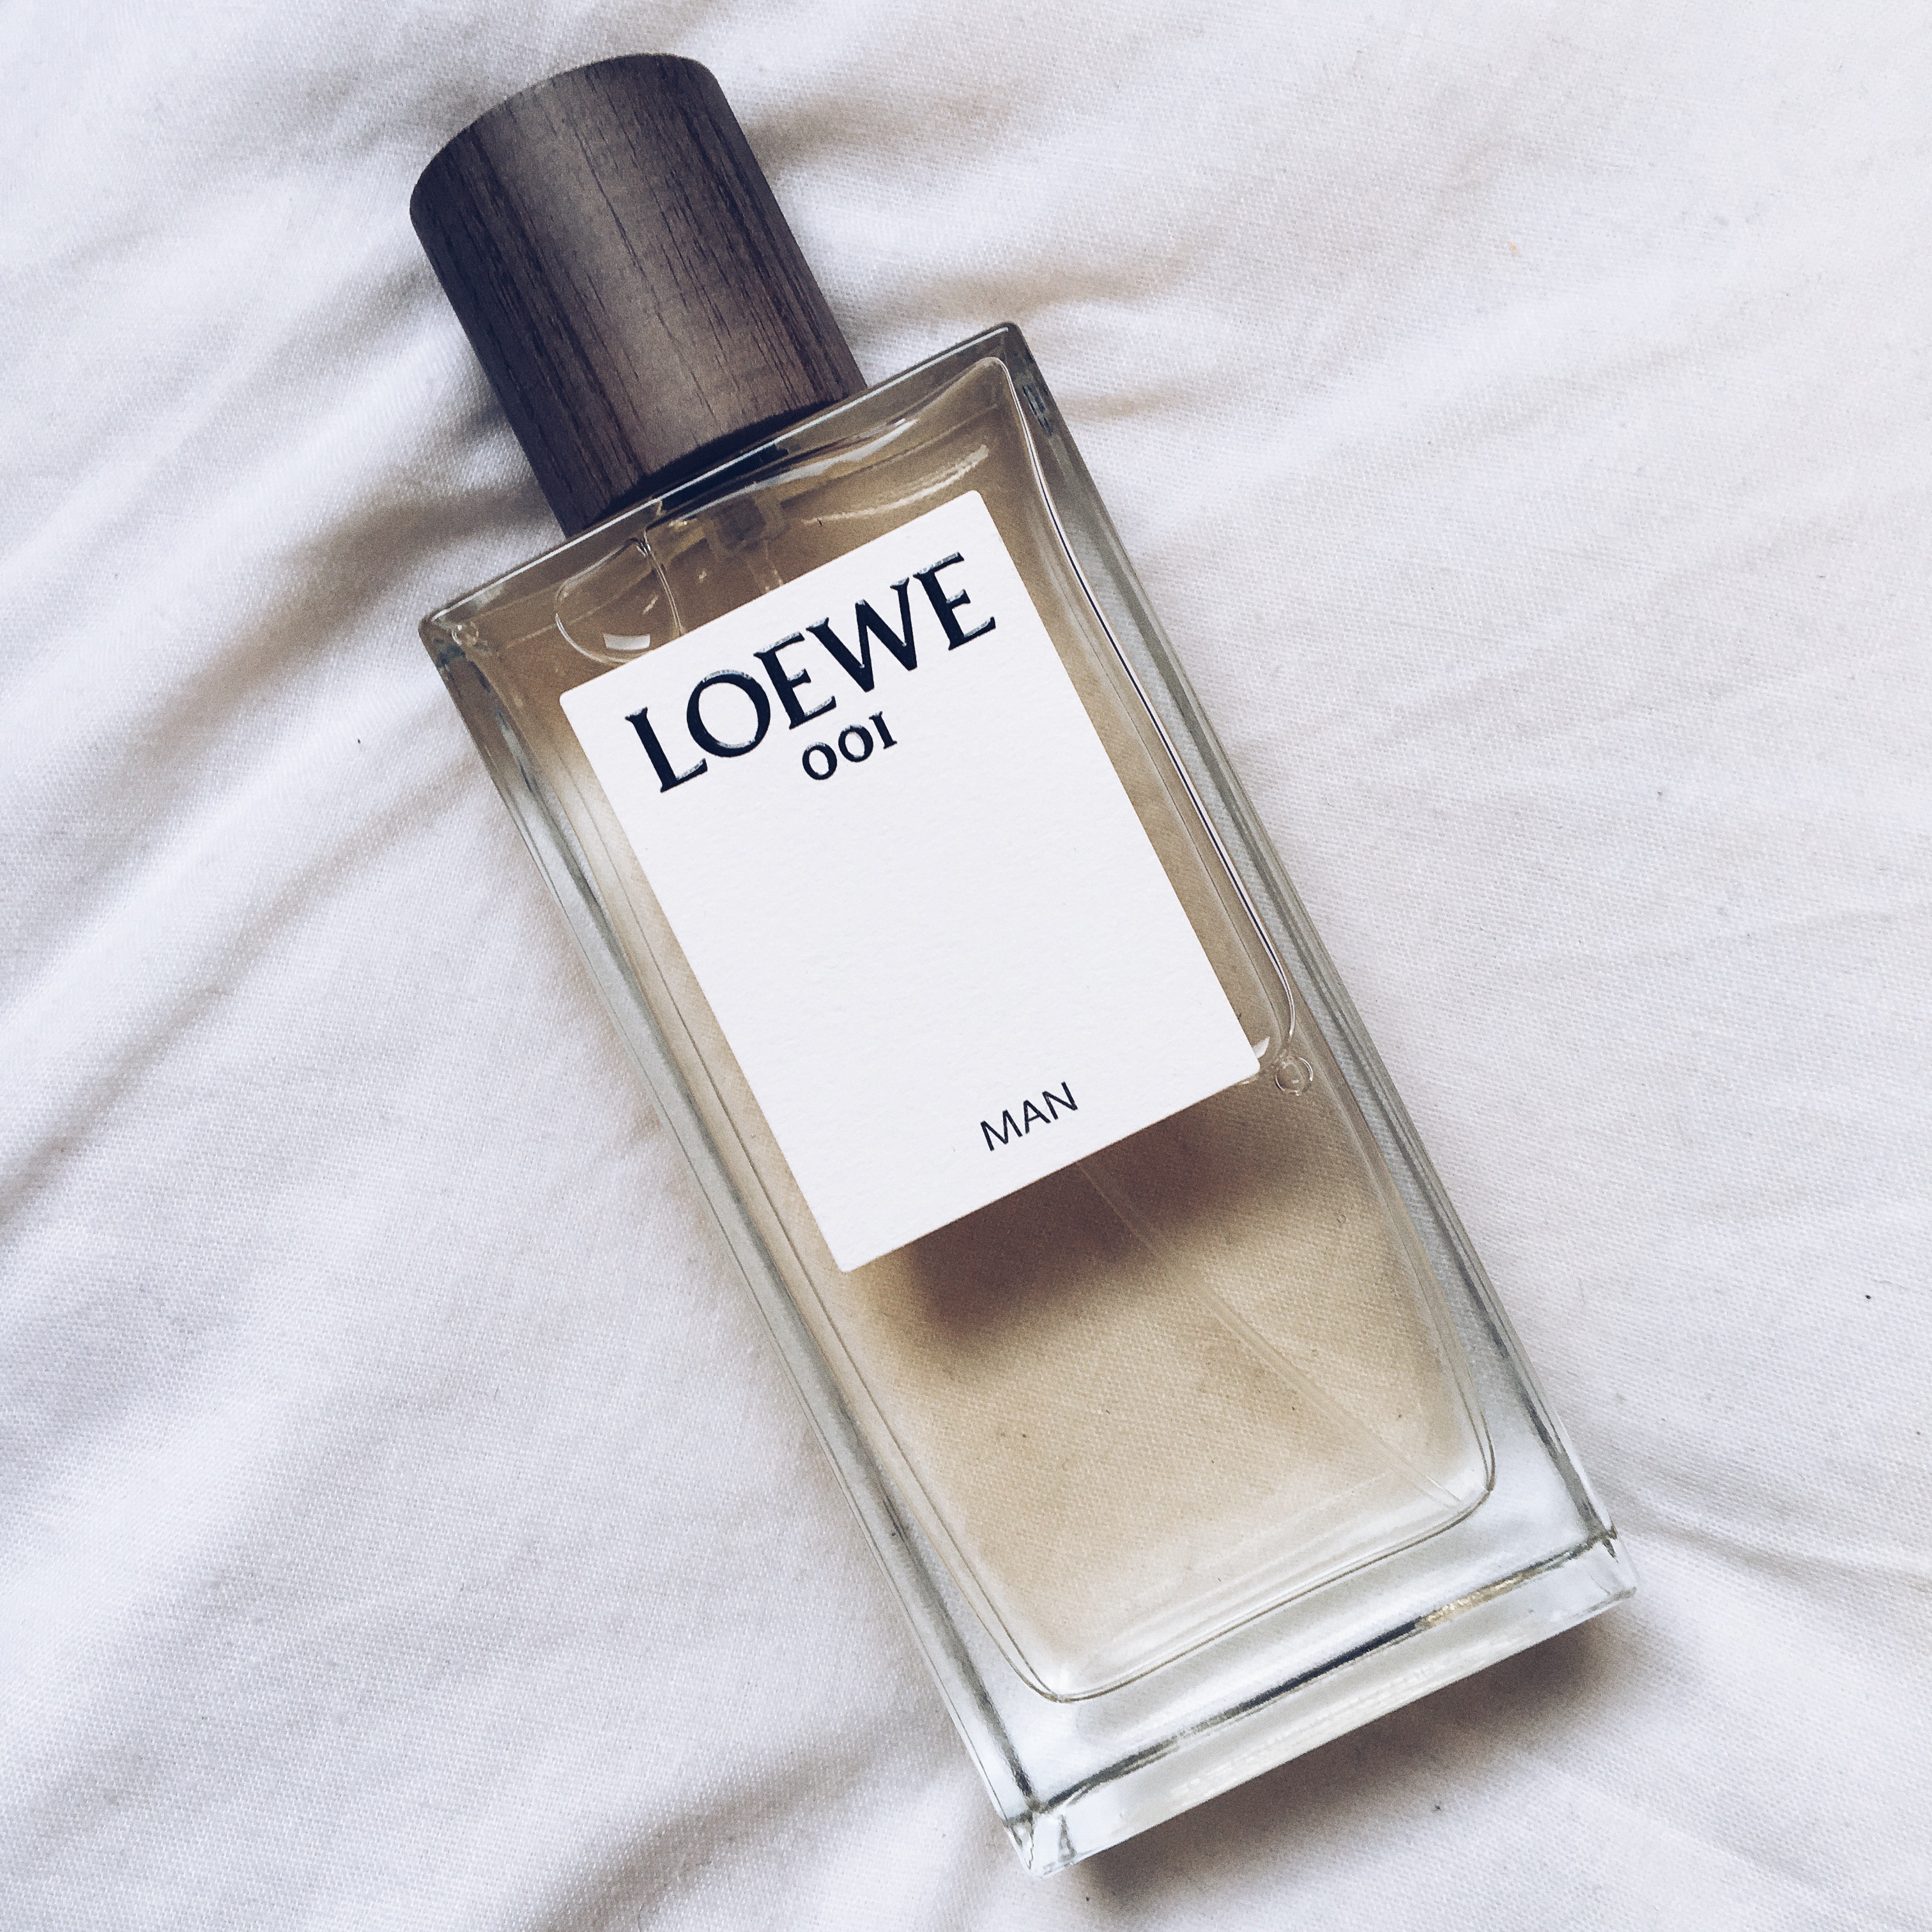 loewe 001 man review